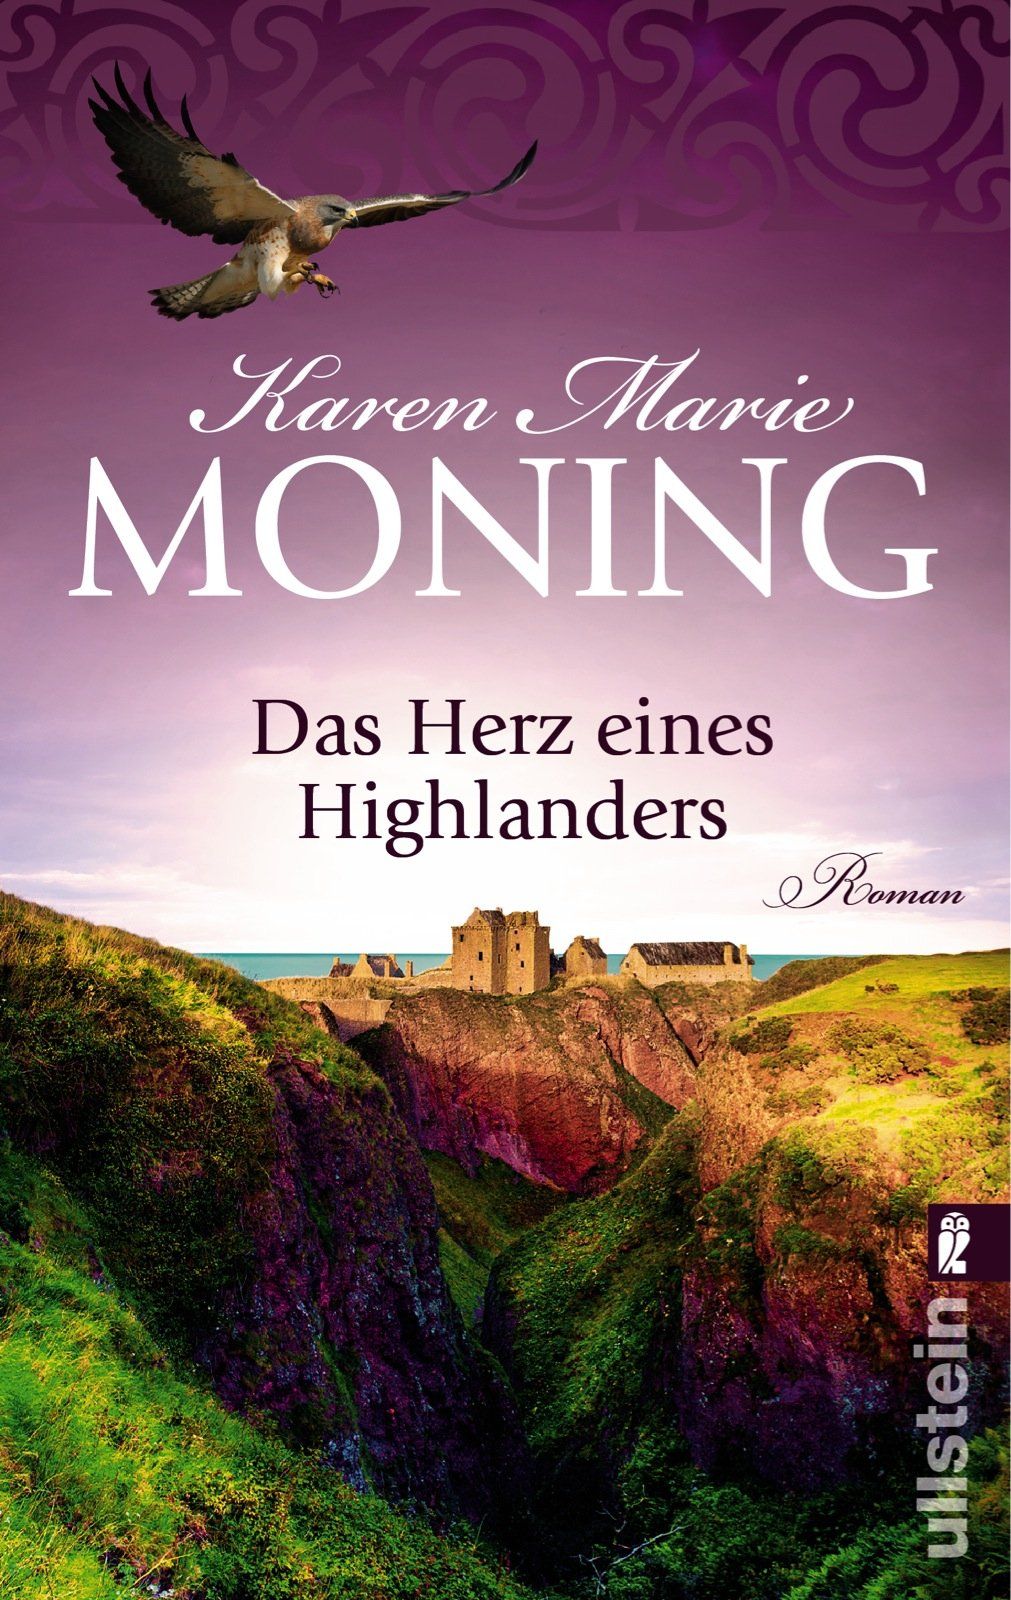 Das Herz eines Highlanders Roman - Moning, Karen Marie